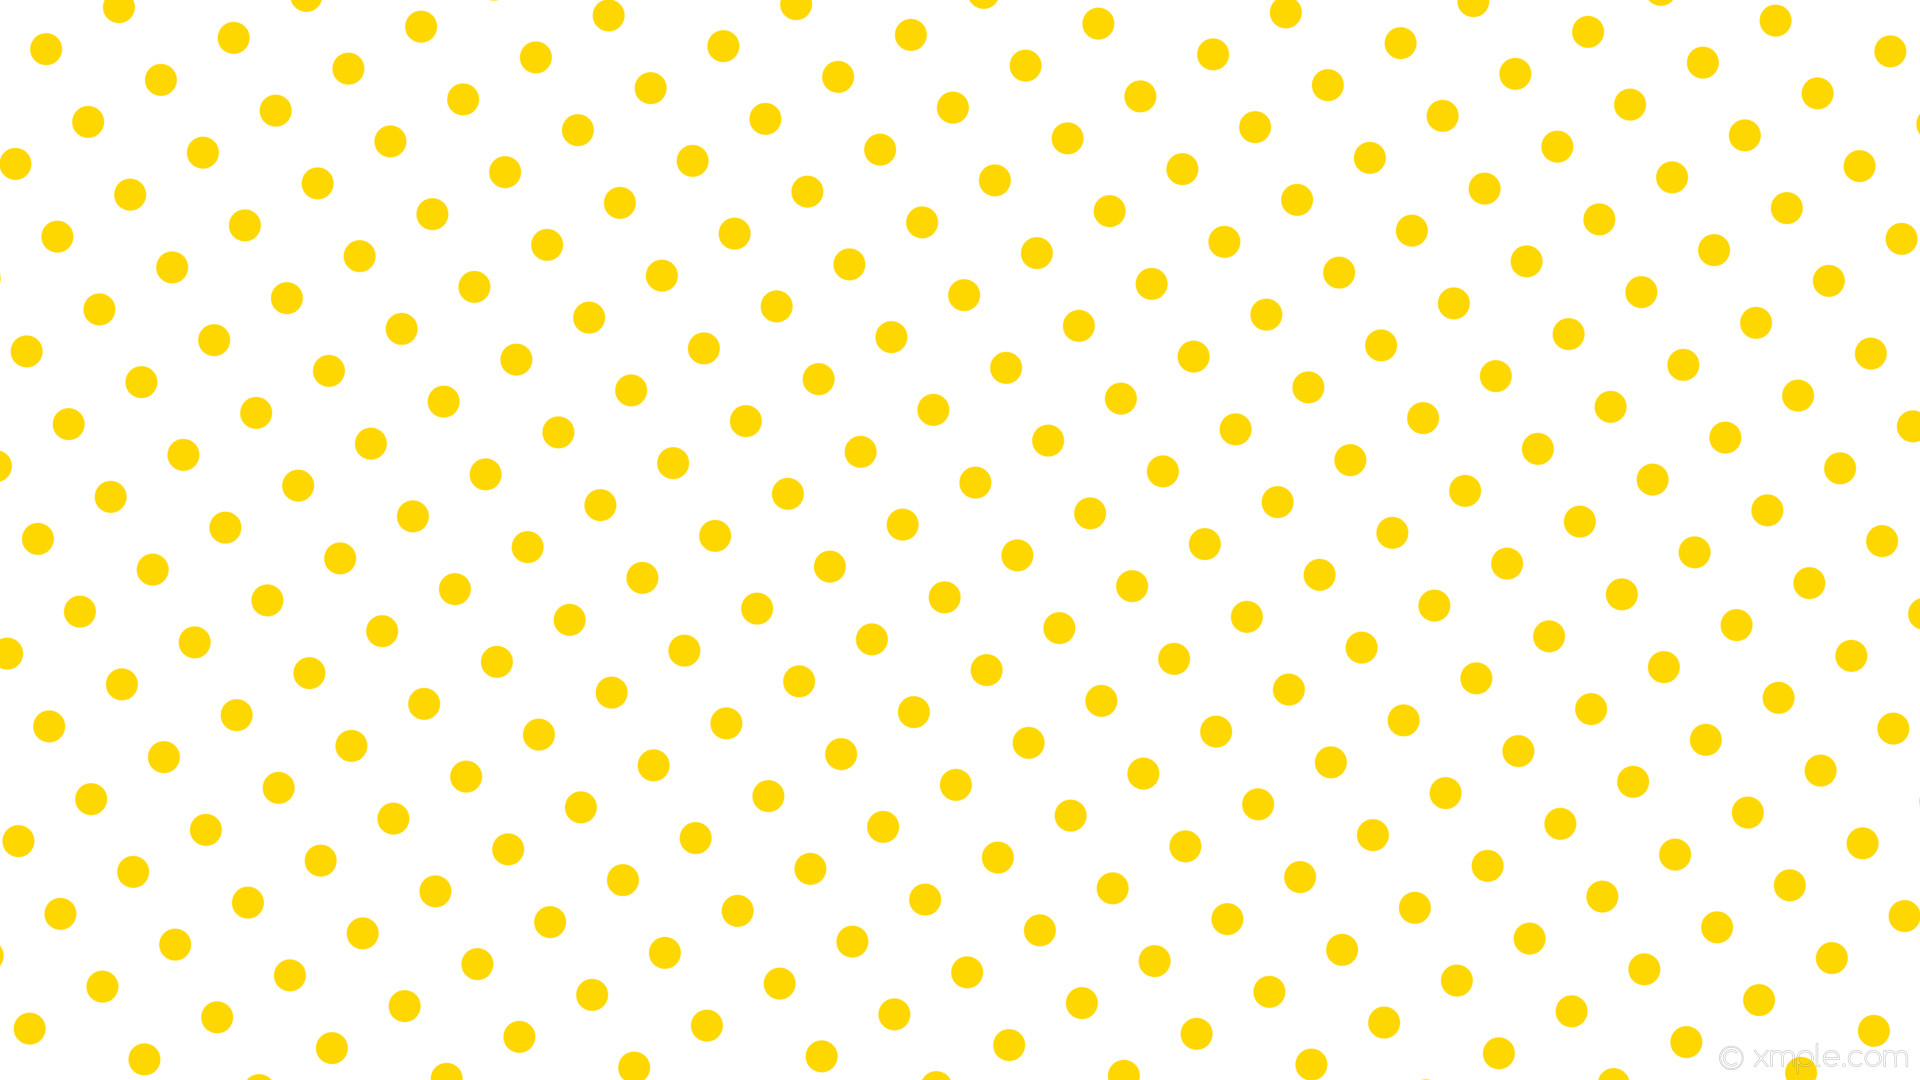 1920x1080 wallpaper white polka dots yellow spots gold #ffffff #ffd700 300Â° 32px 84px